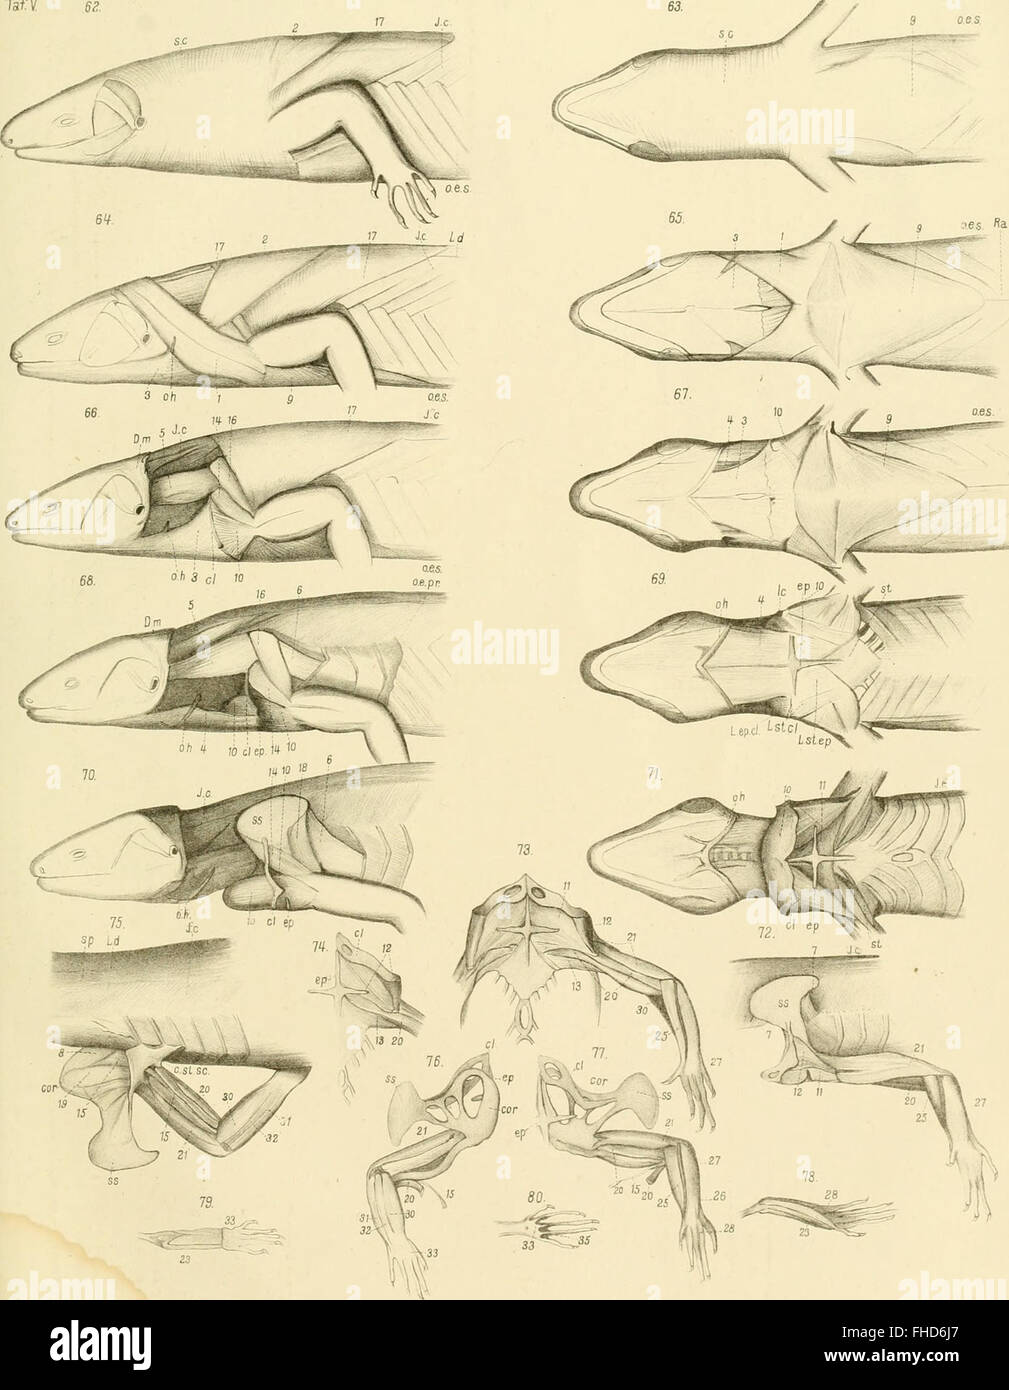 Die Knochen und Muskeln der Extremitaten bei den schlangenC383C2A4hnlichen Sauri (1870) Stock Photo